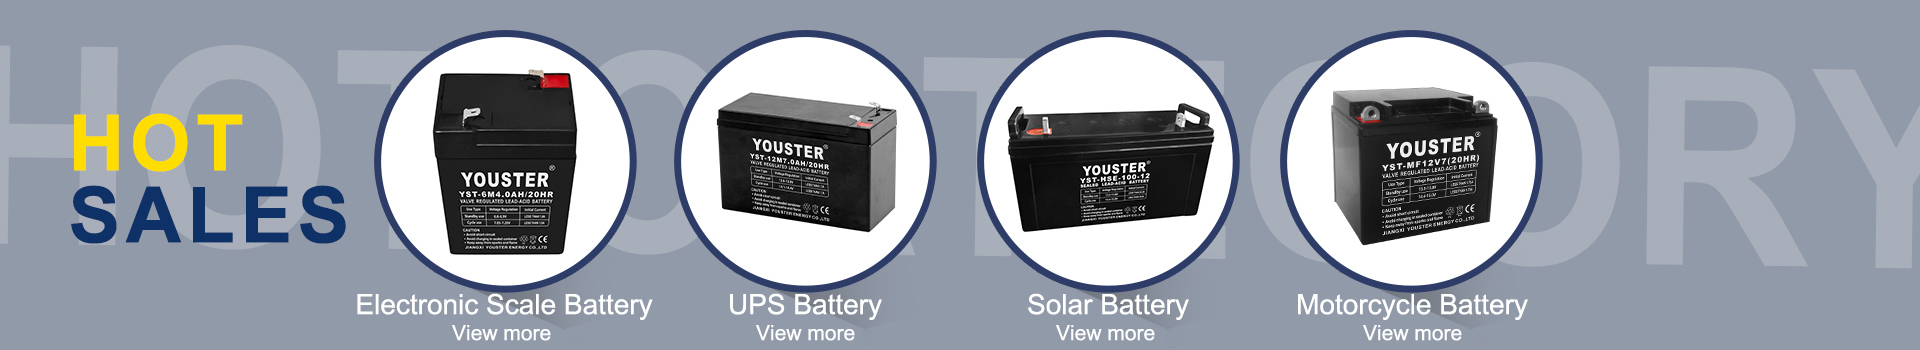 Najlepsza jakość fabryczna akumulator akumulator 4v4ah 20 -godzinny bateria ołowiu dla systemów skali